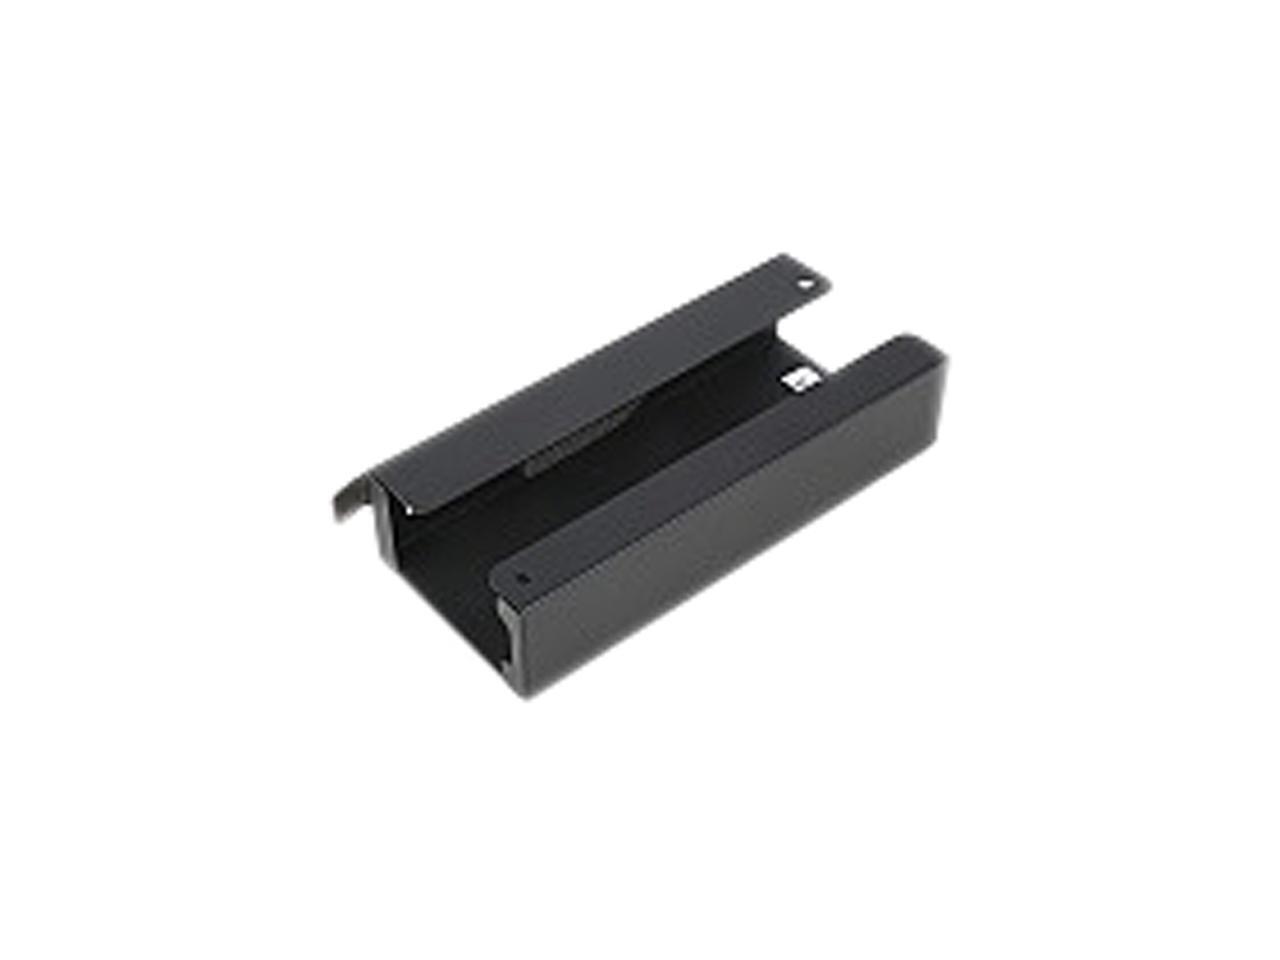 Lenovo Mounting Bracket for Power Adapter - Black (4xh0n23158)